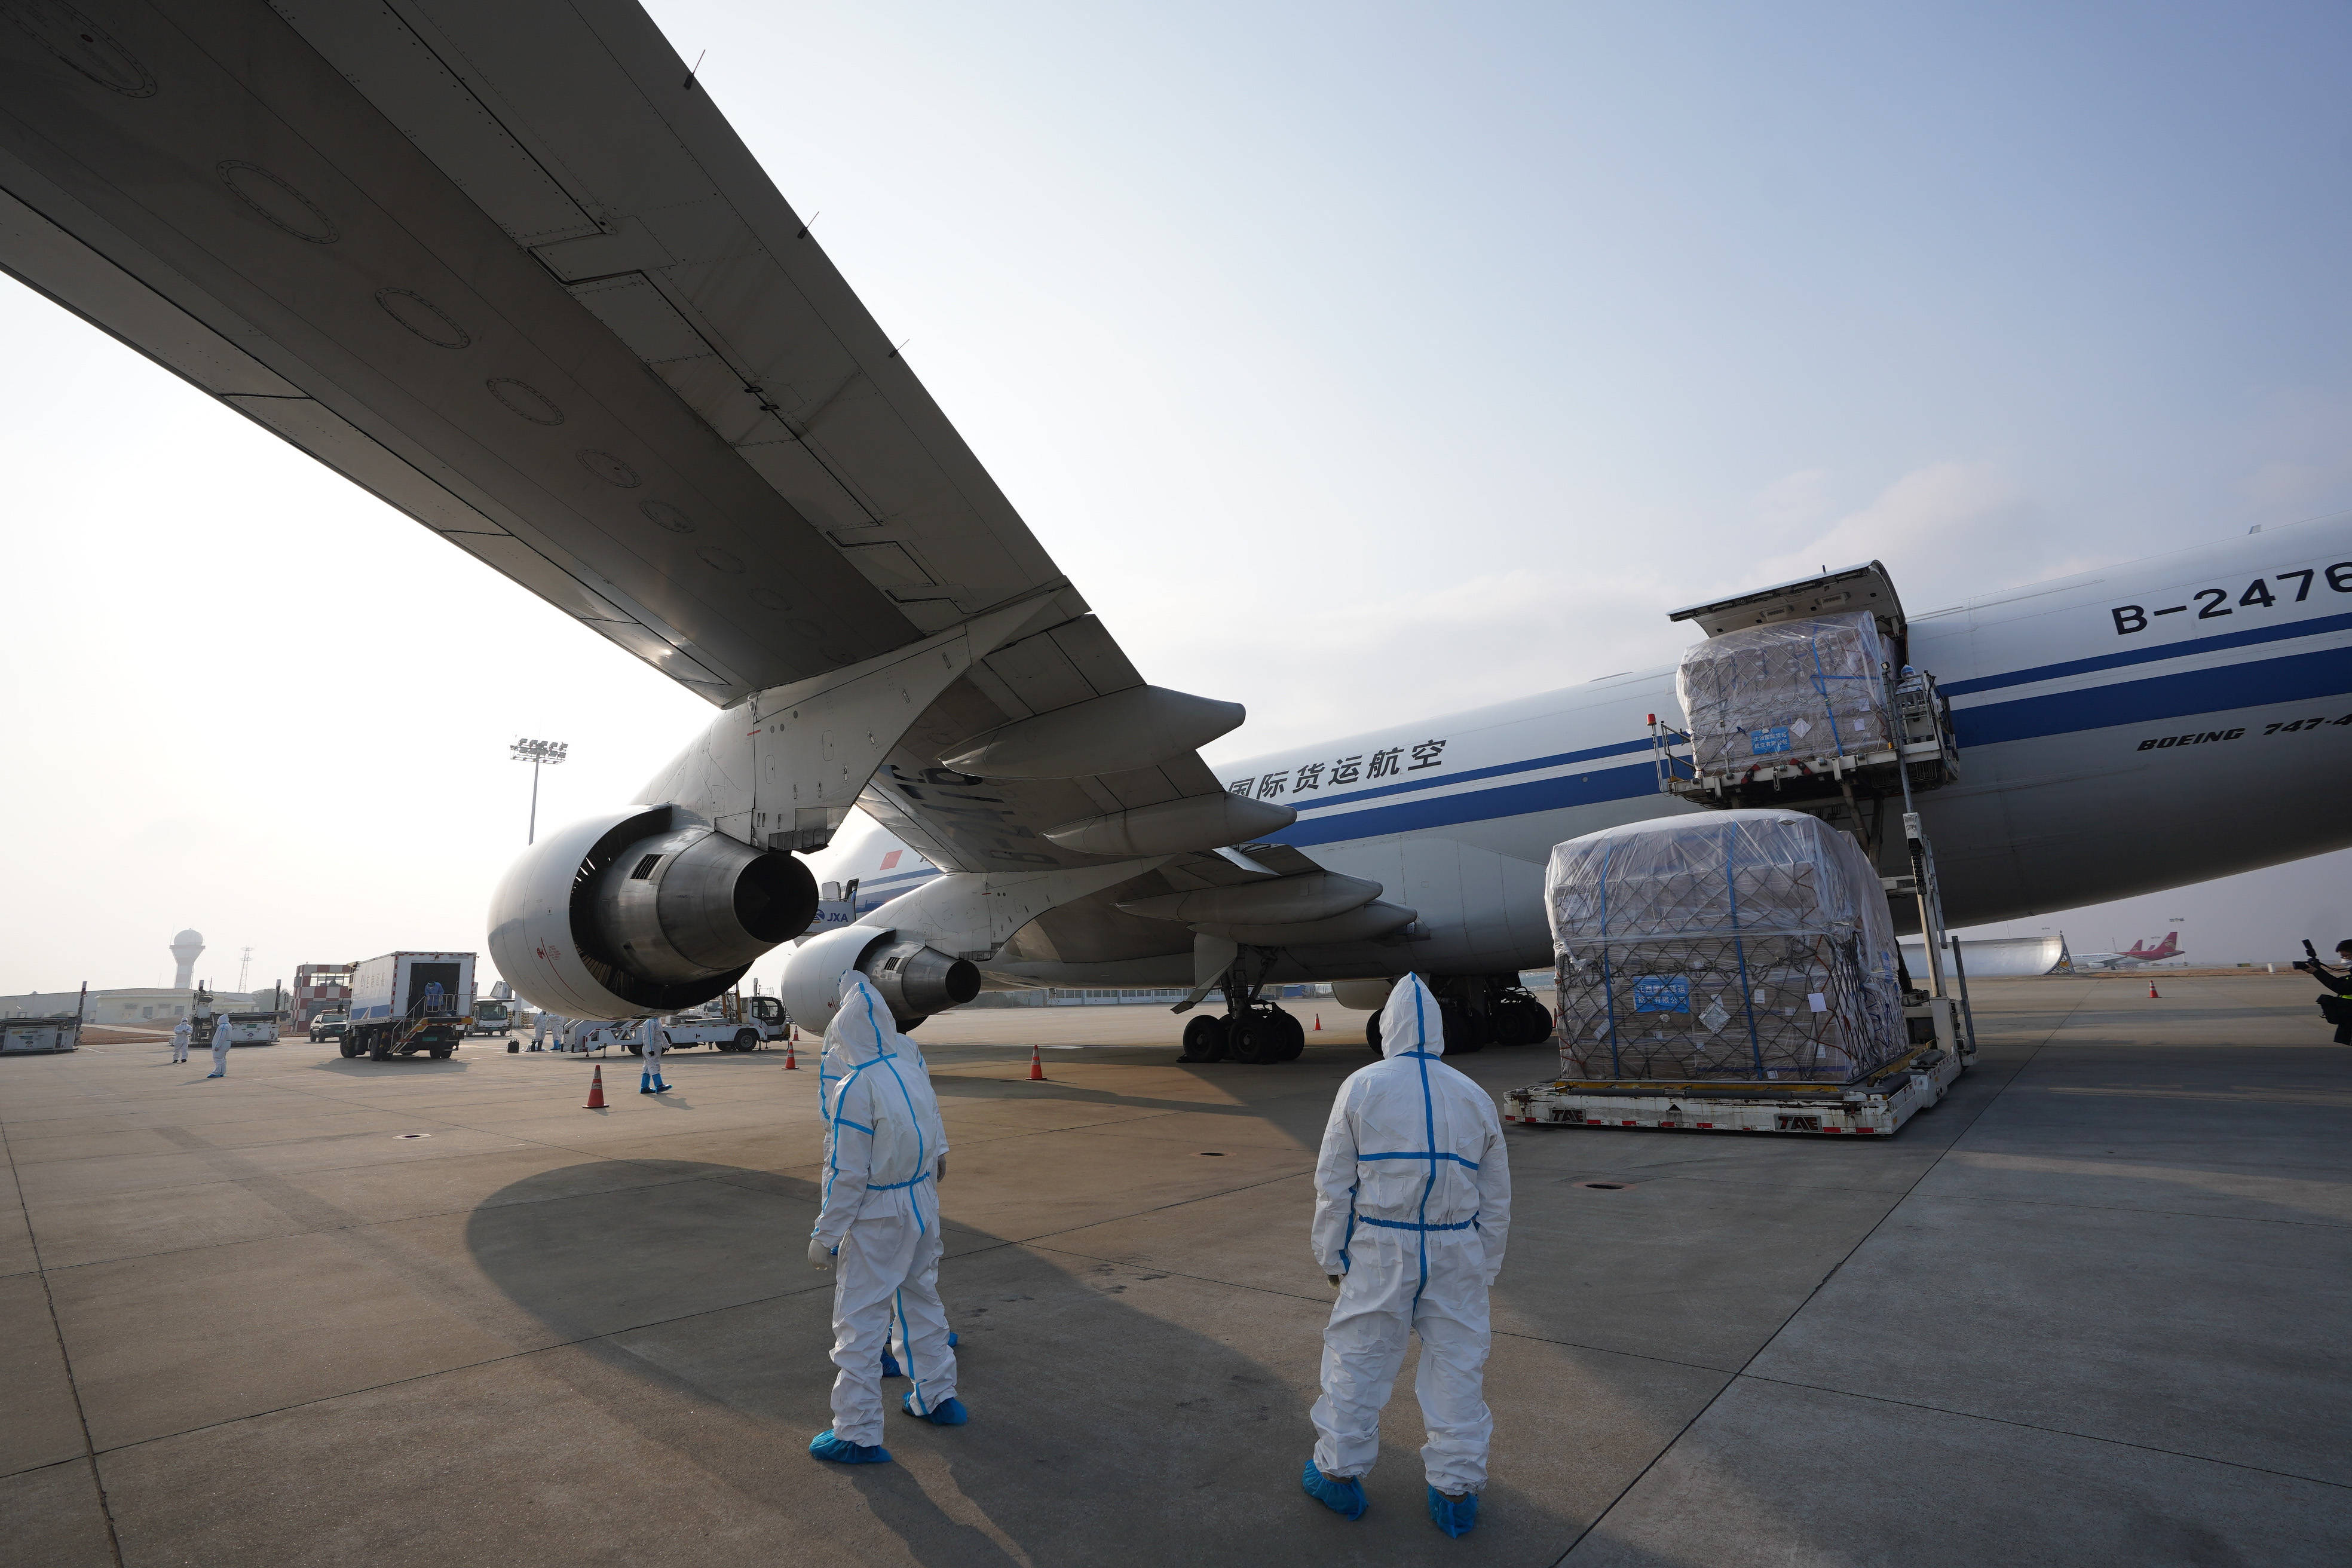 国际货运航空公司首航这是1月23日在南昌昌北国际机场拍摄的执飞货机